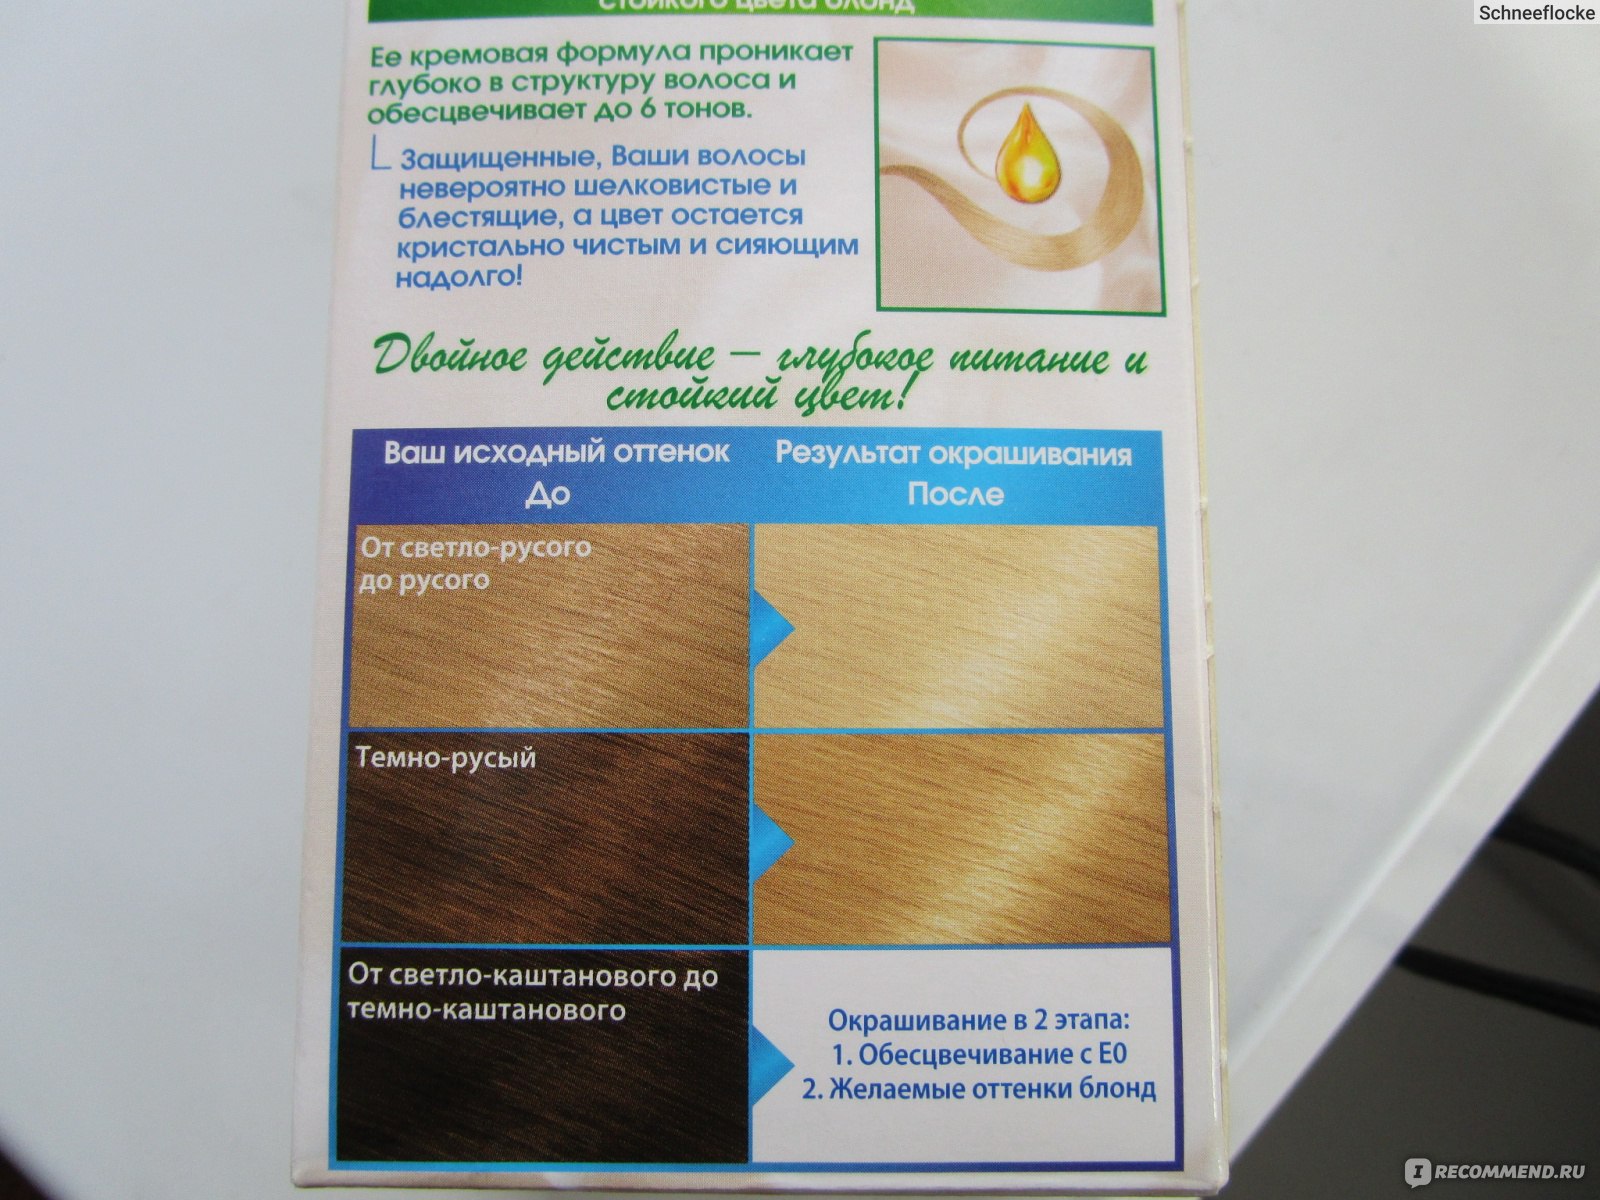 Обесцвечивающая интенсивная крем-краска для волос Garnier Color Naturals супер блонд (Е0) фото